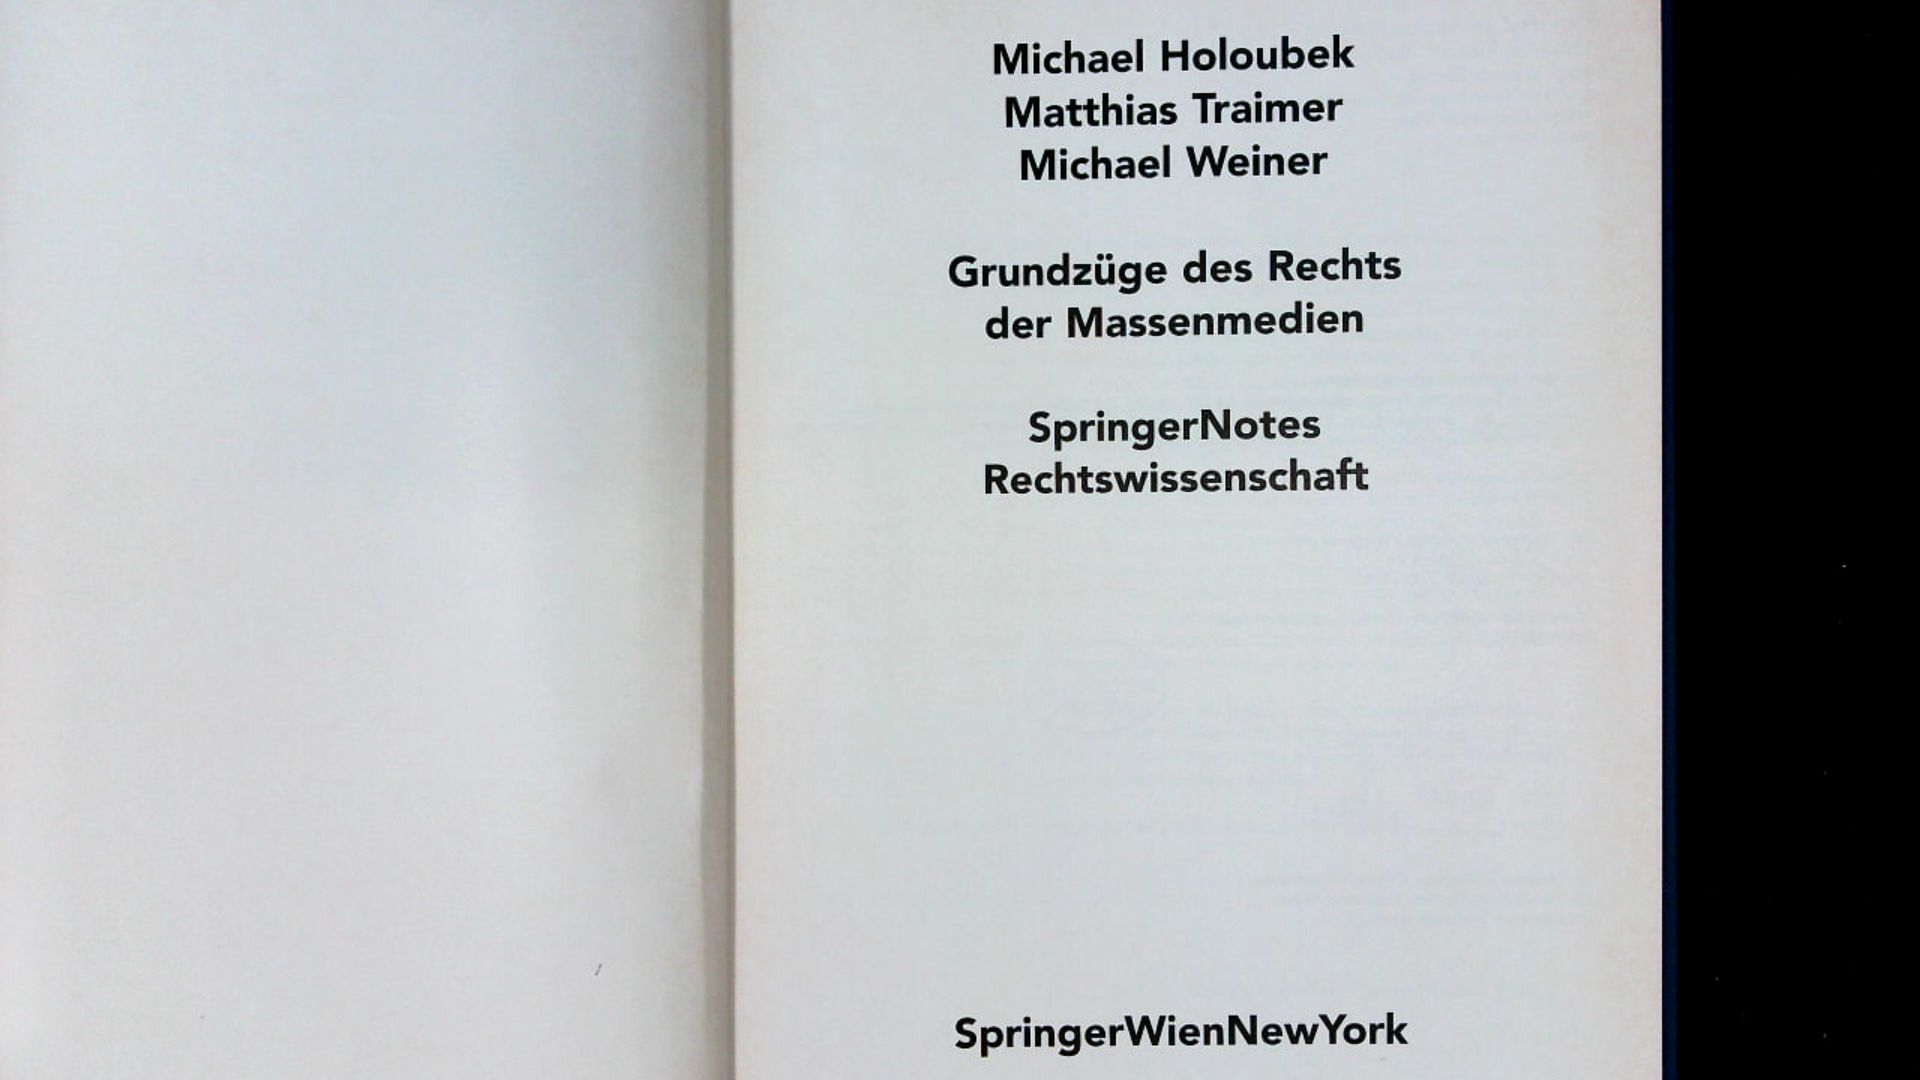 Grundzüge des Rechts der Massenmedien. Springer notes Rechtswissenschaft. - Holoubek, Michael, Matthias Traimer  und Michael Weiner